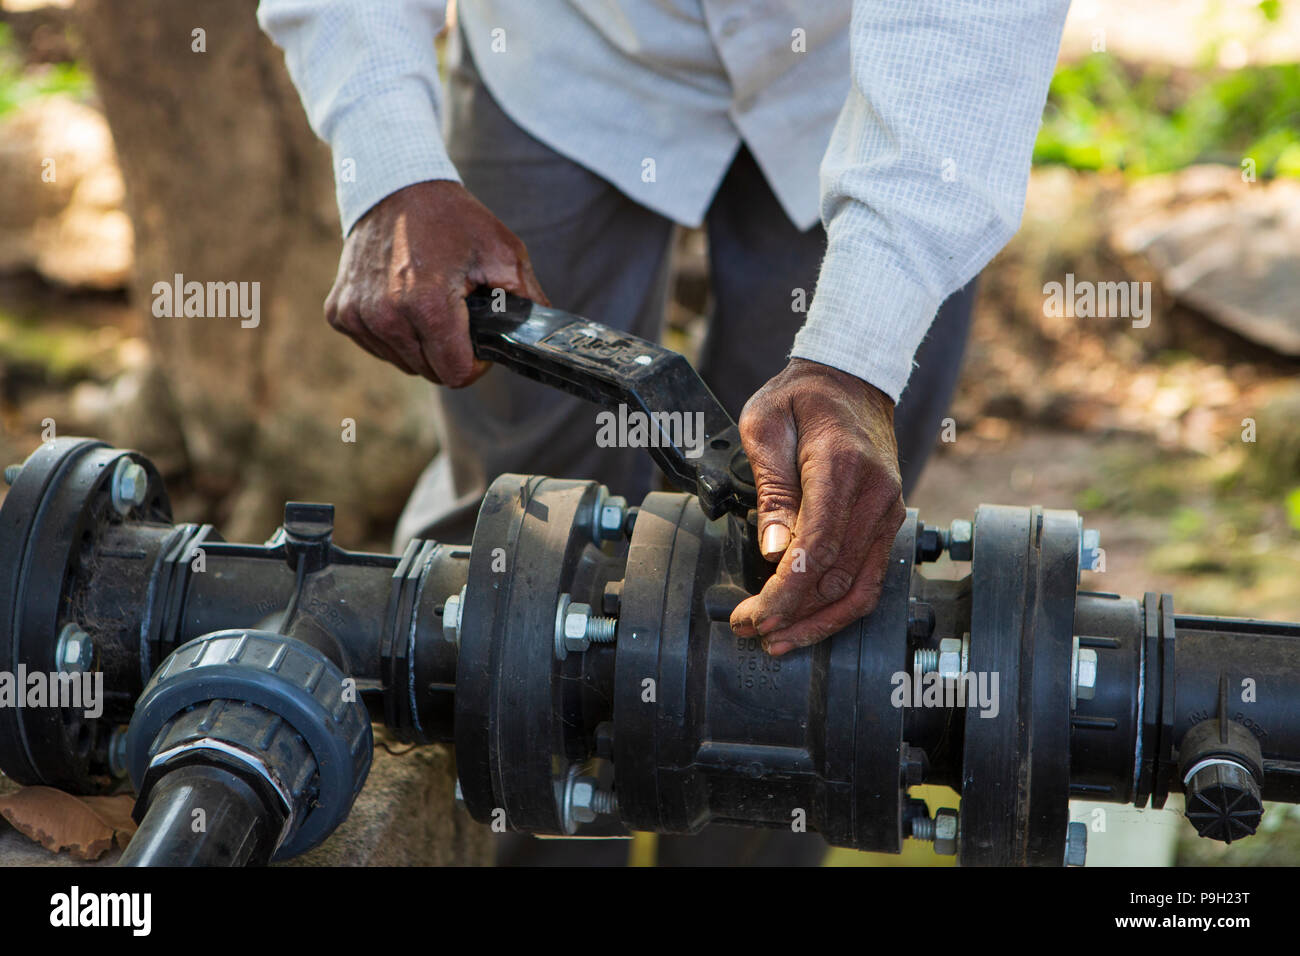 Un agricoltore si accende la pompa della sua nuova irrigazione di gocciolamento sistema che richiede molto meno tempo per l'acqua rispetto al precedente allagare irrigazione. Foto Stock